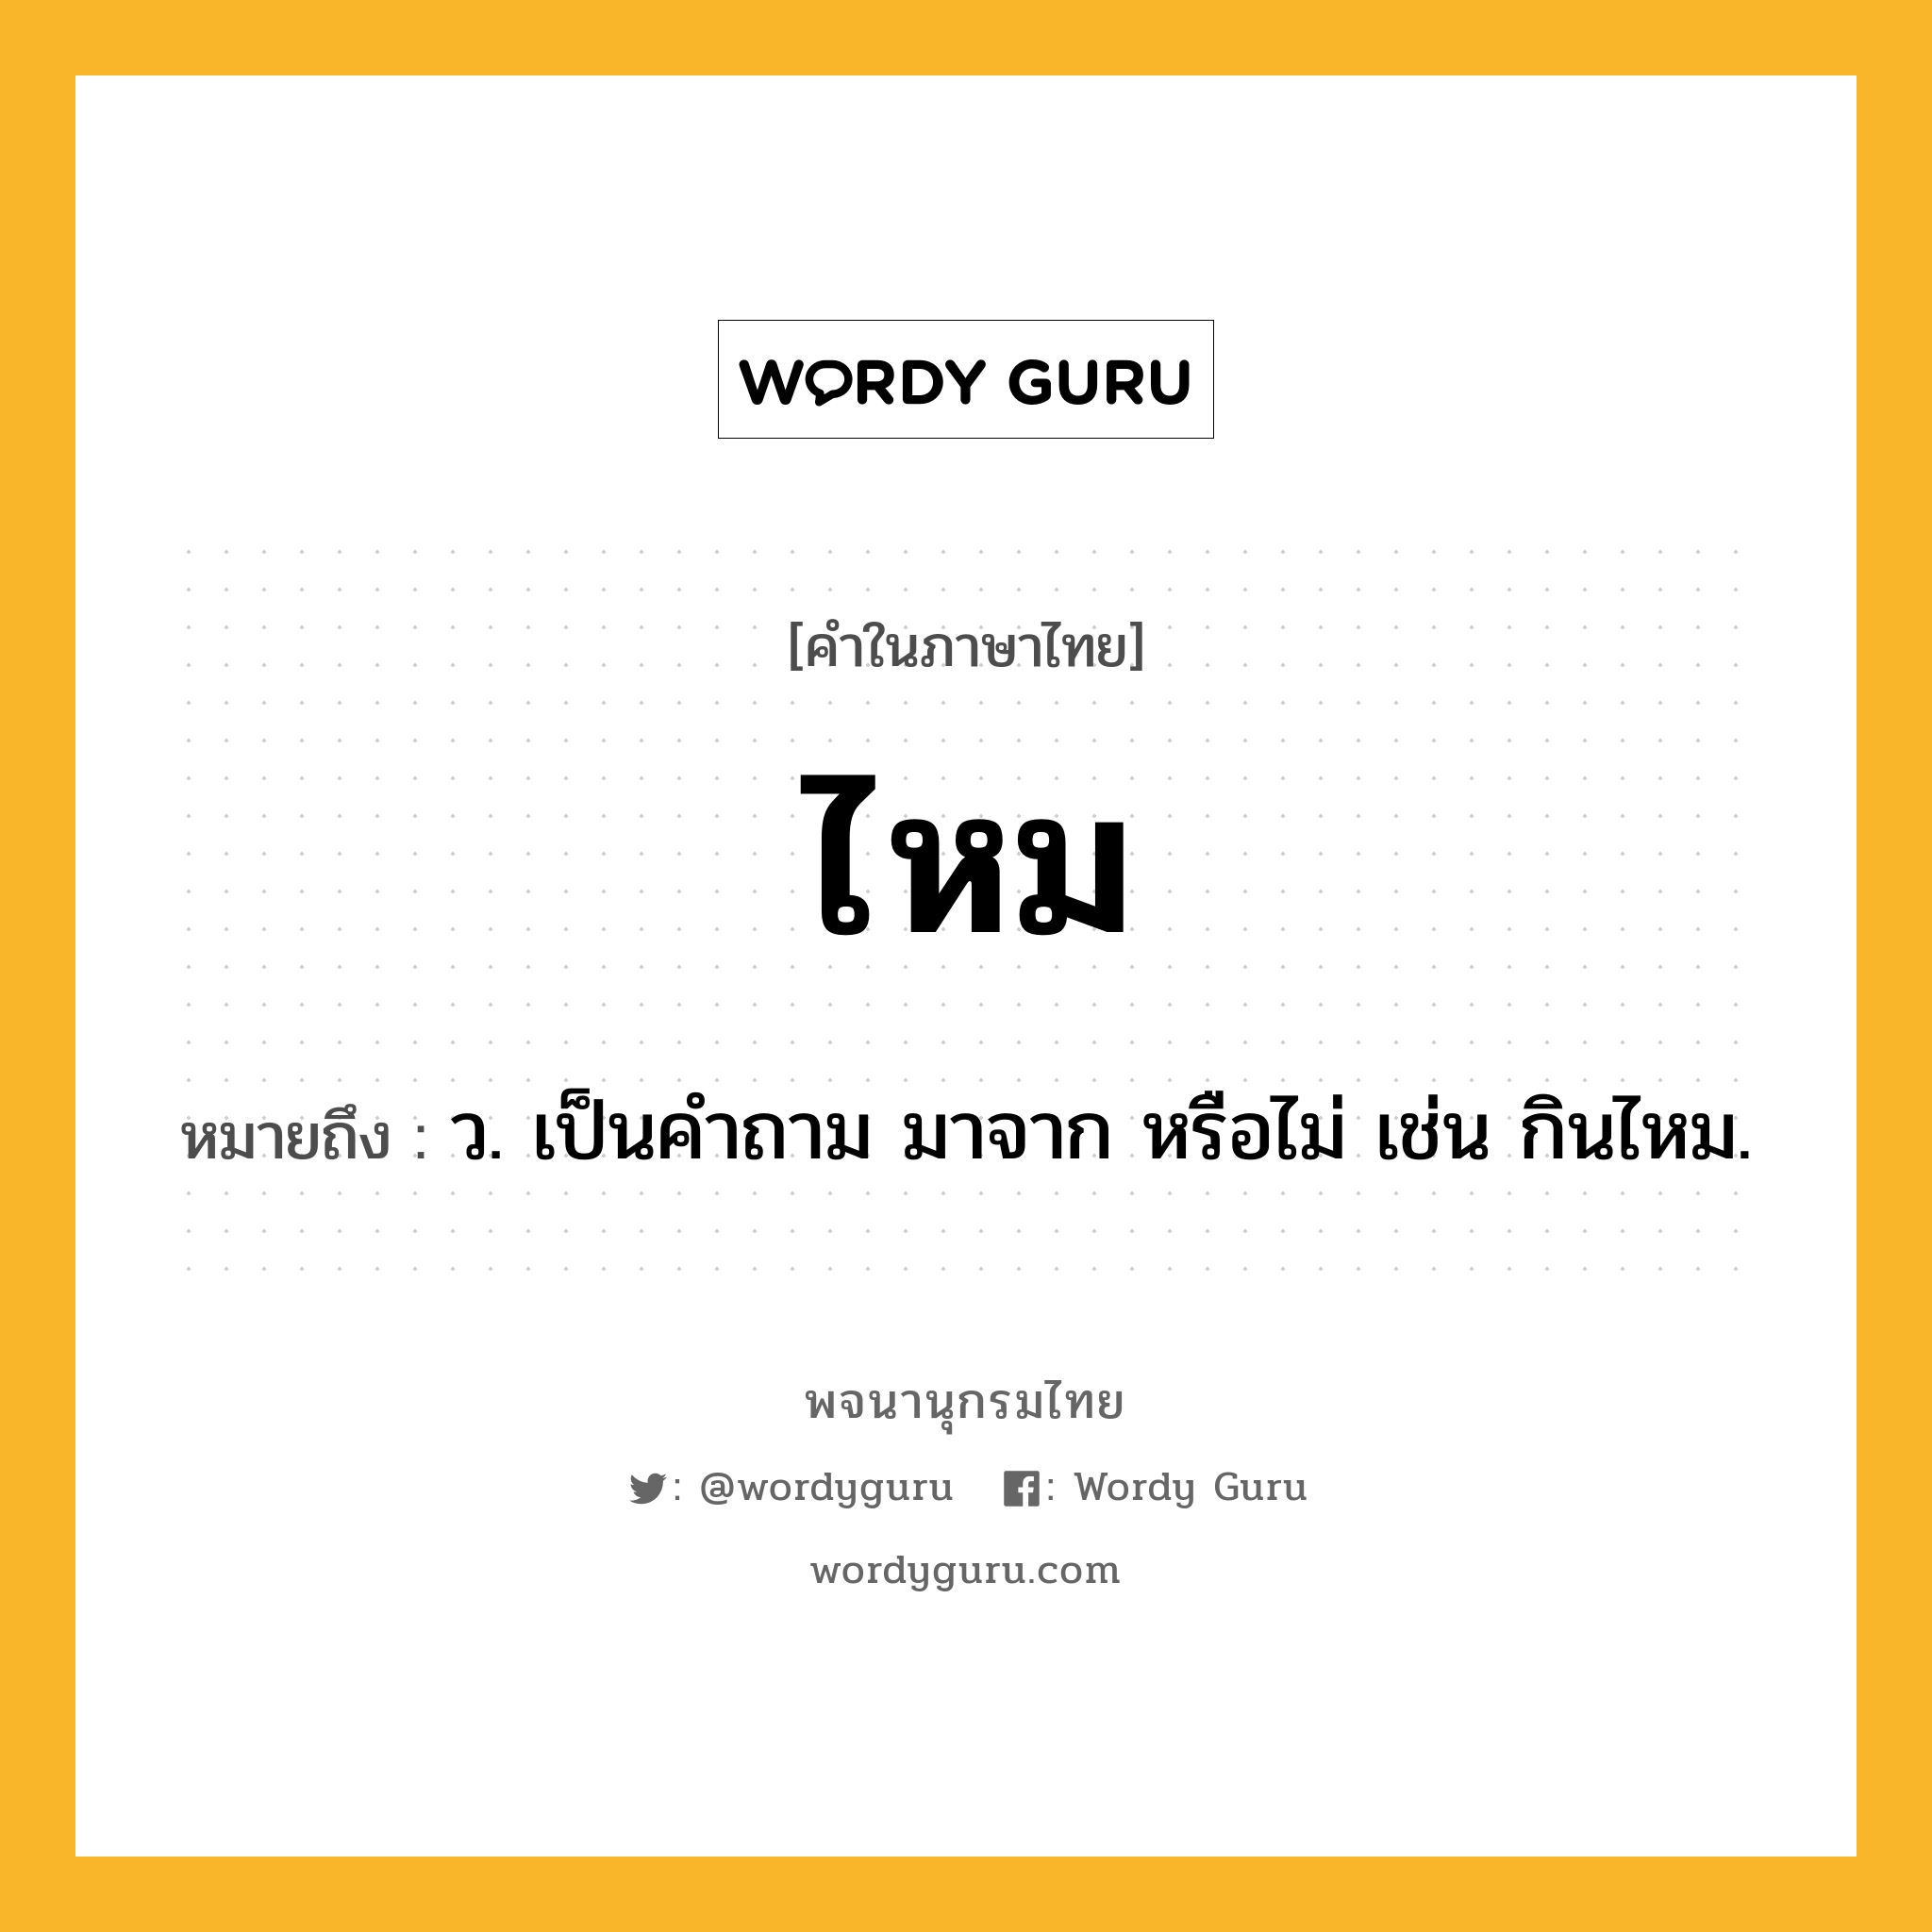 ไหม หมายถึงอะไร?, คำในภาษาไทย ไหม หมายถึง ว. เป็นคําถาม มาจาก หรือไม่ เช่น กินไหม.